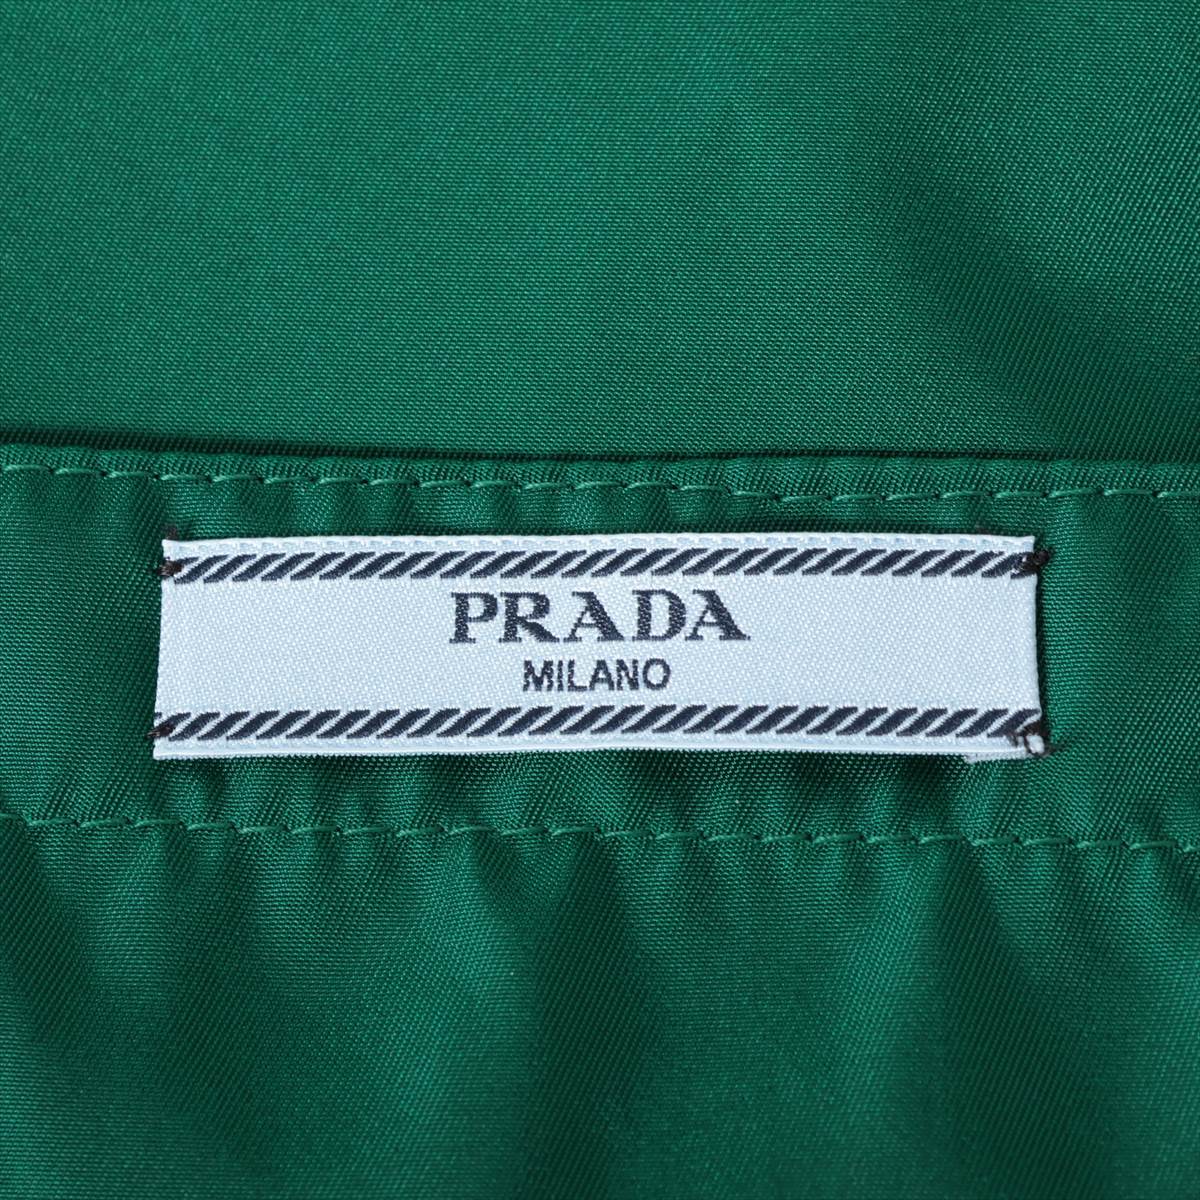 Prada Re Nylon Re Nylon 21AW Nylon Sleeveless dress 38 Ladies' Green  230672 Triangle logo